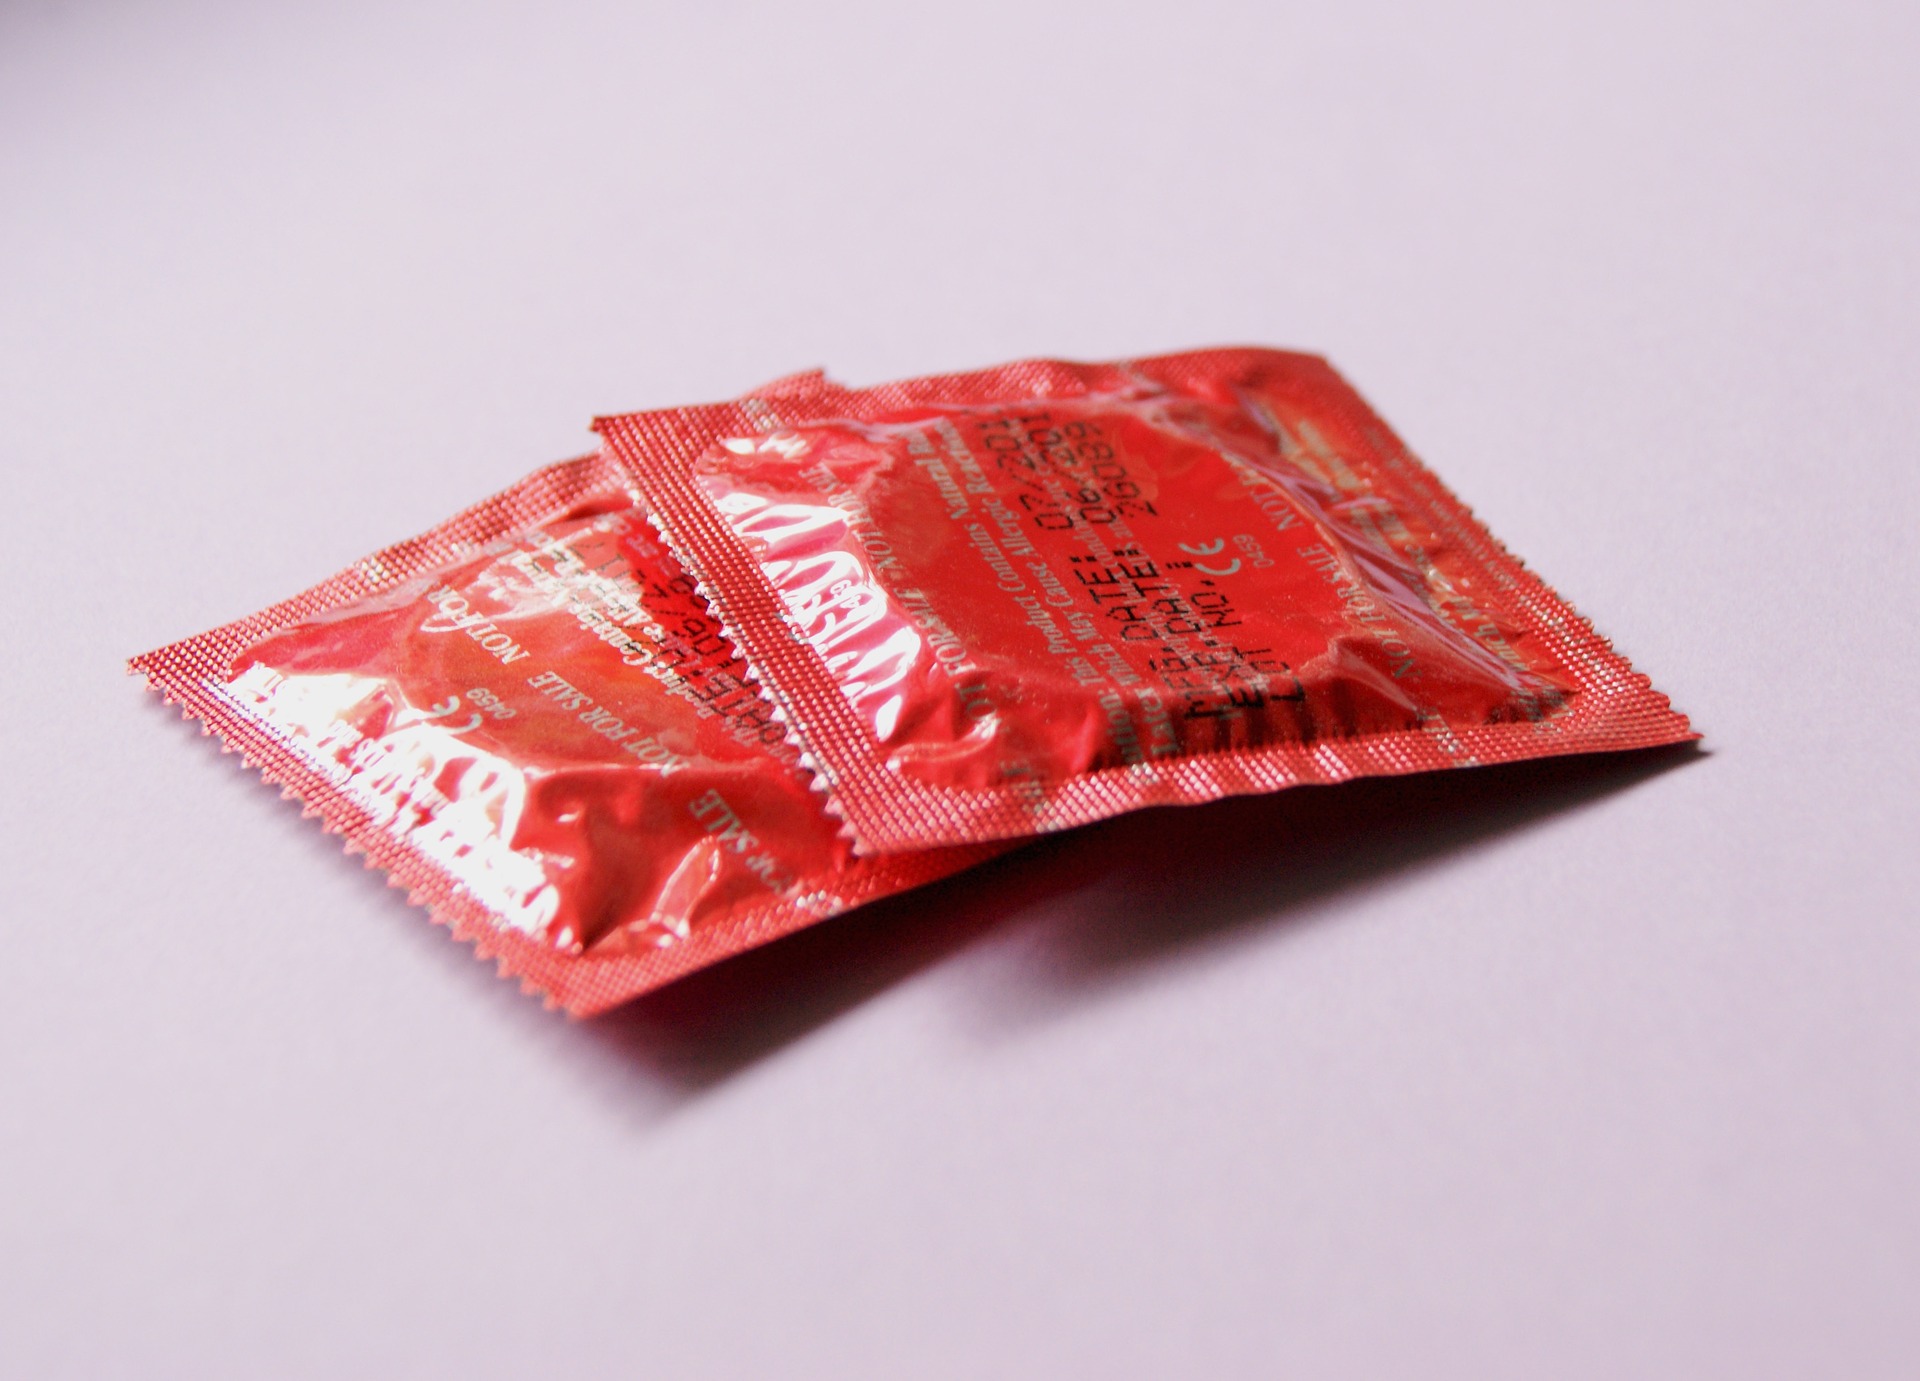 condoms contraception